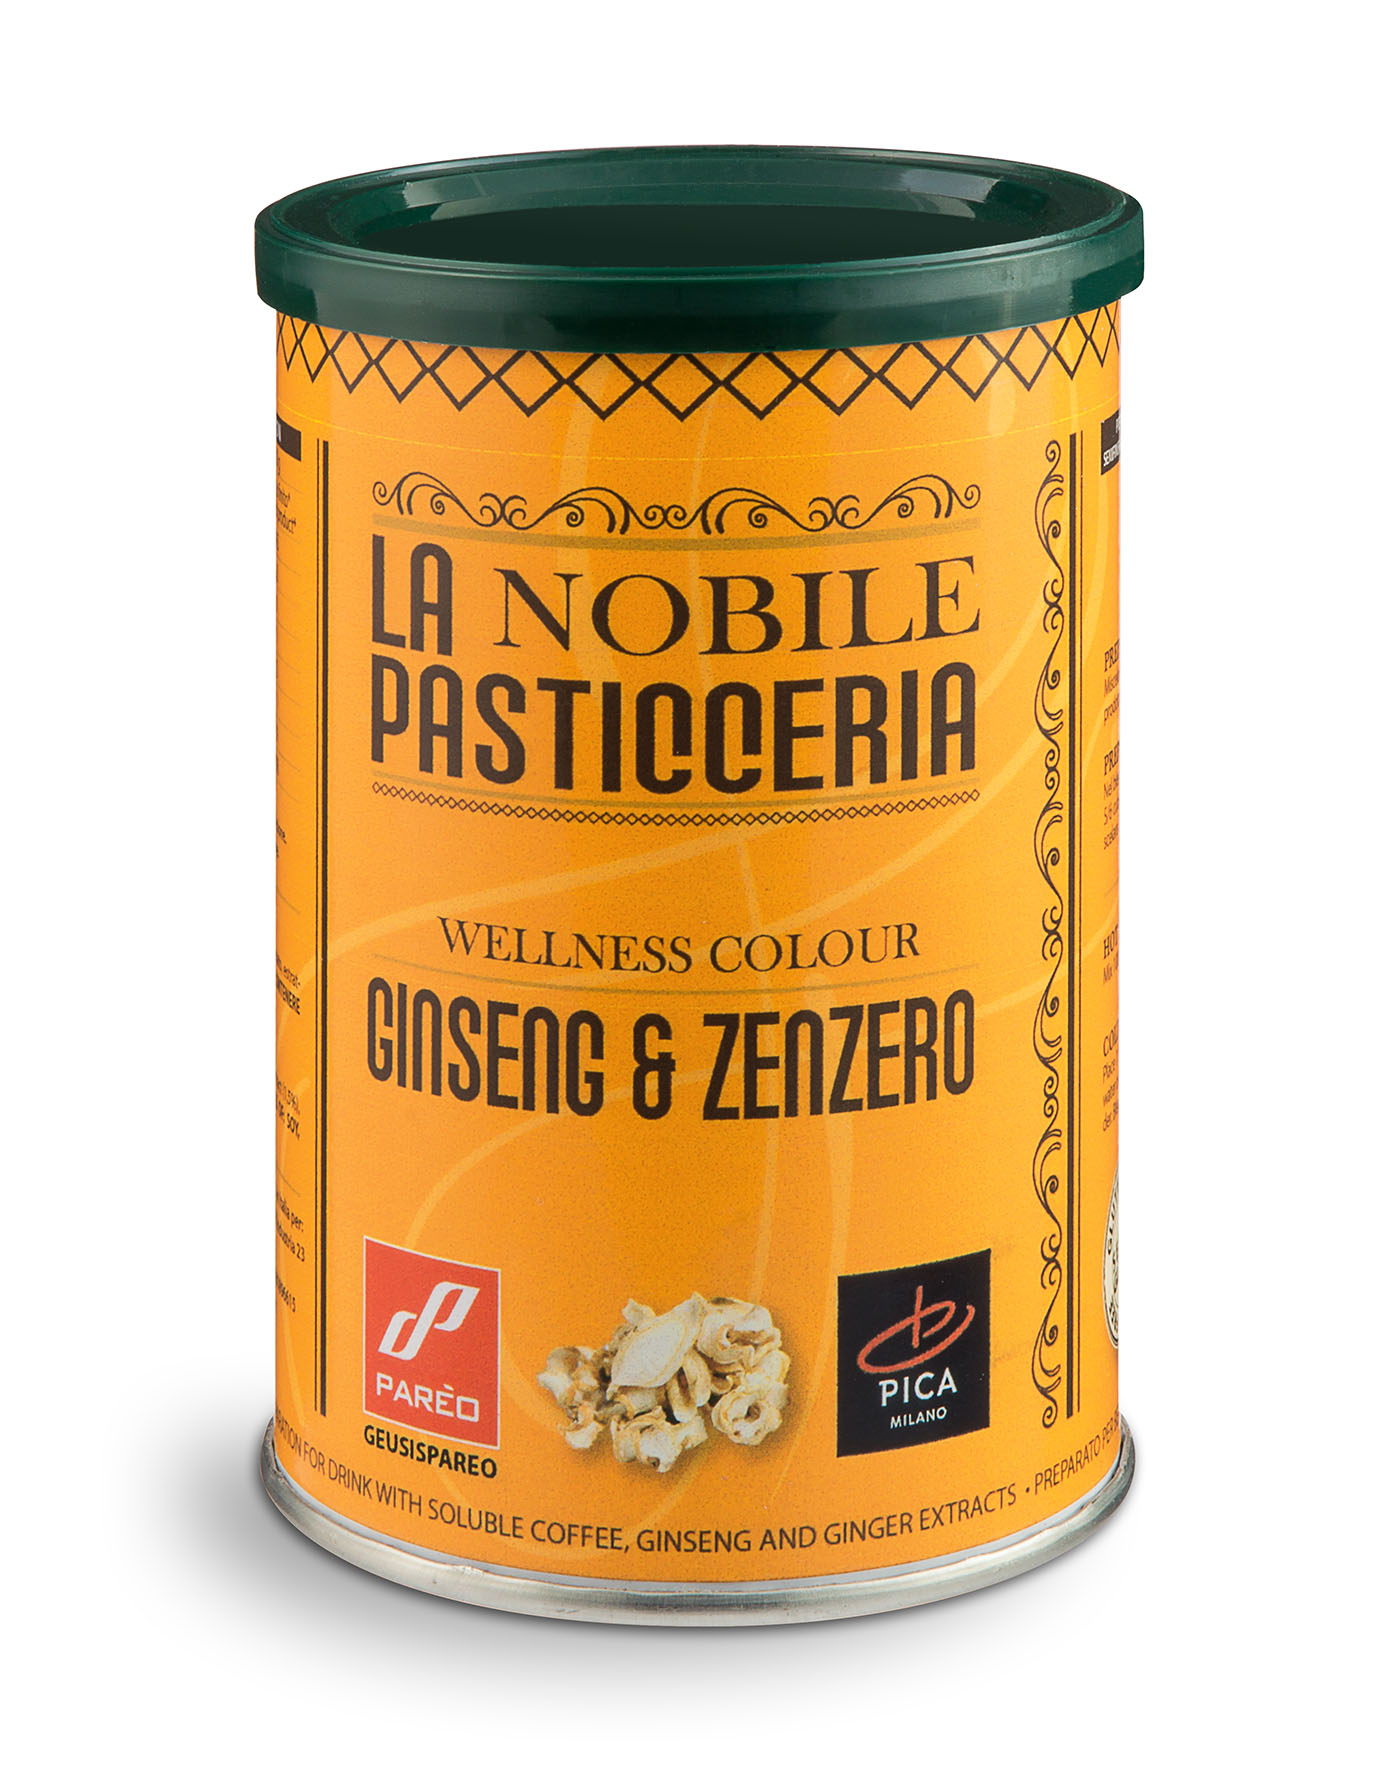 La Nobile Pasticceria - GINSENG & ZENZERO